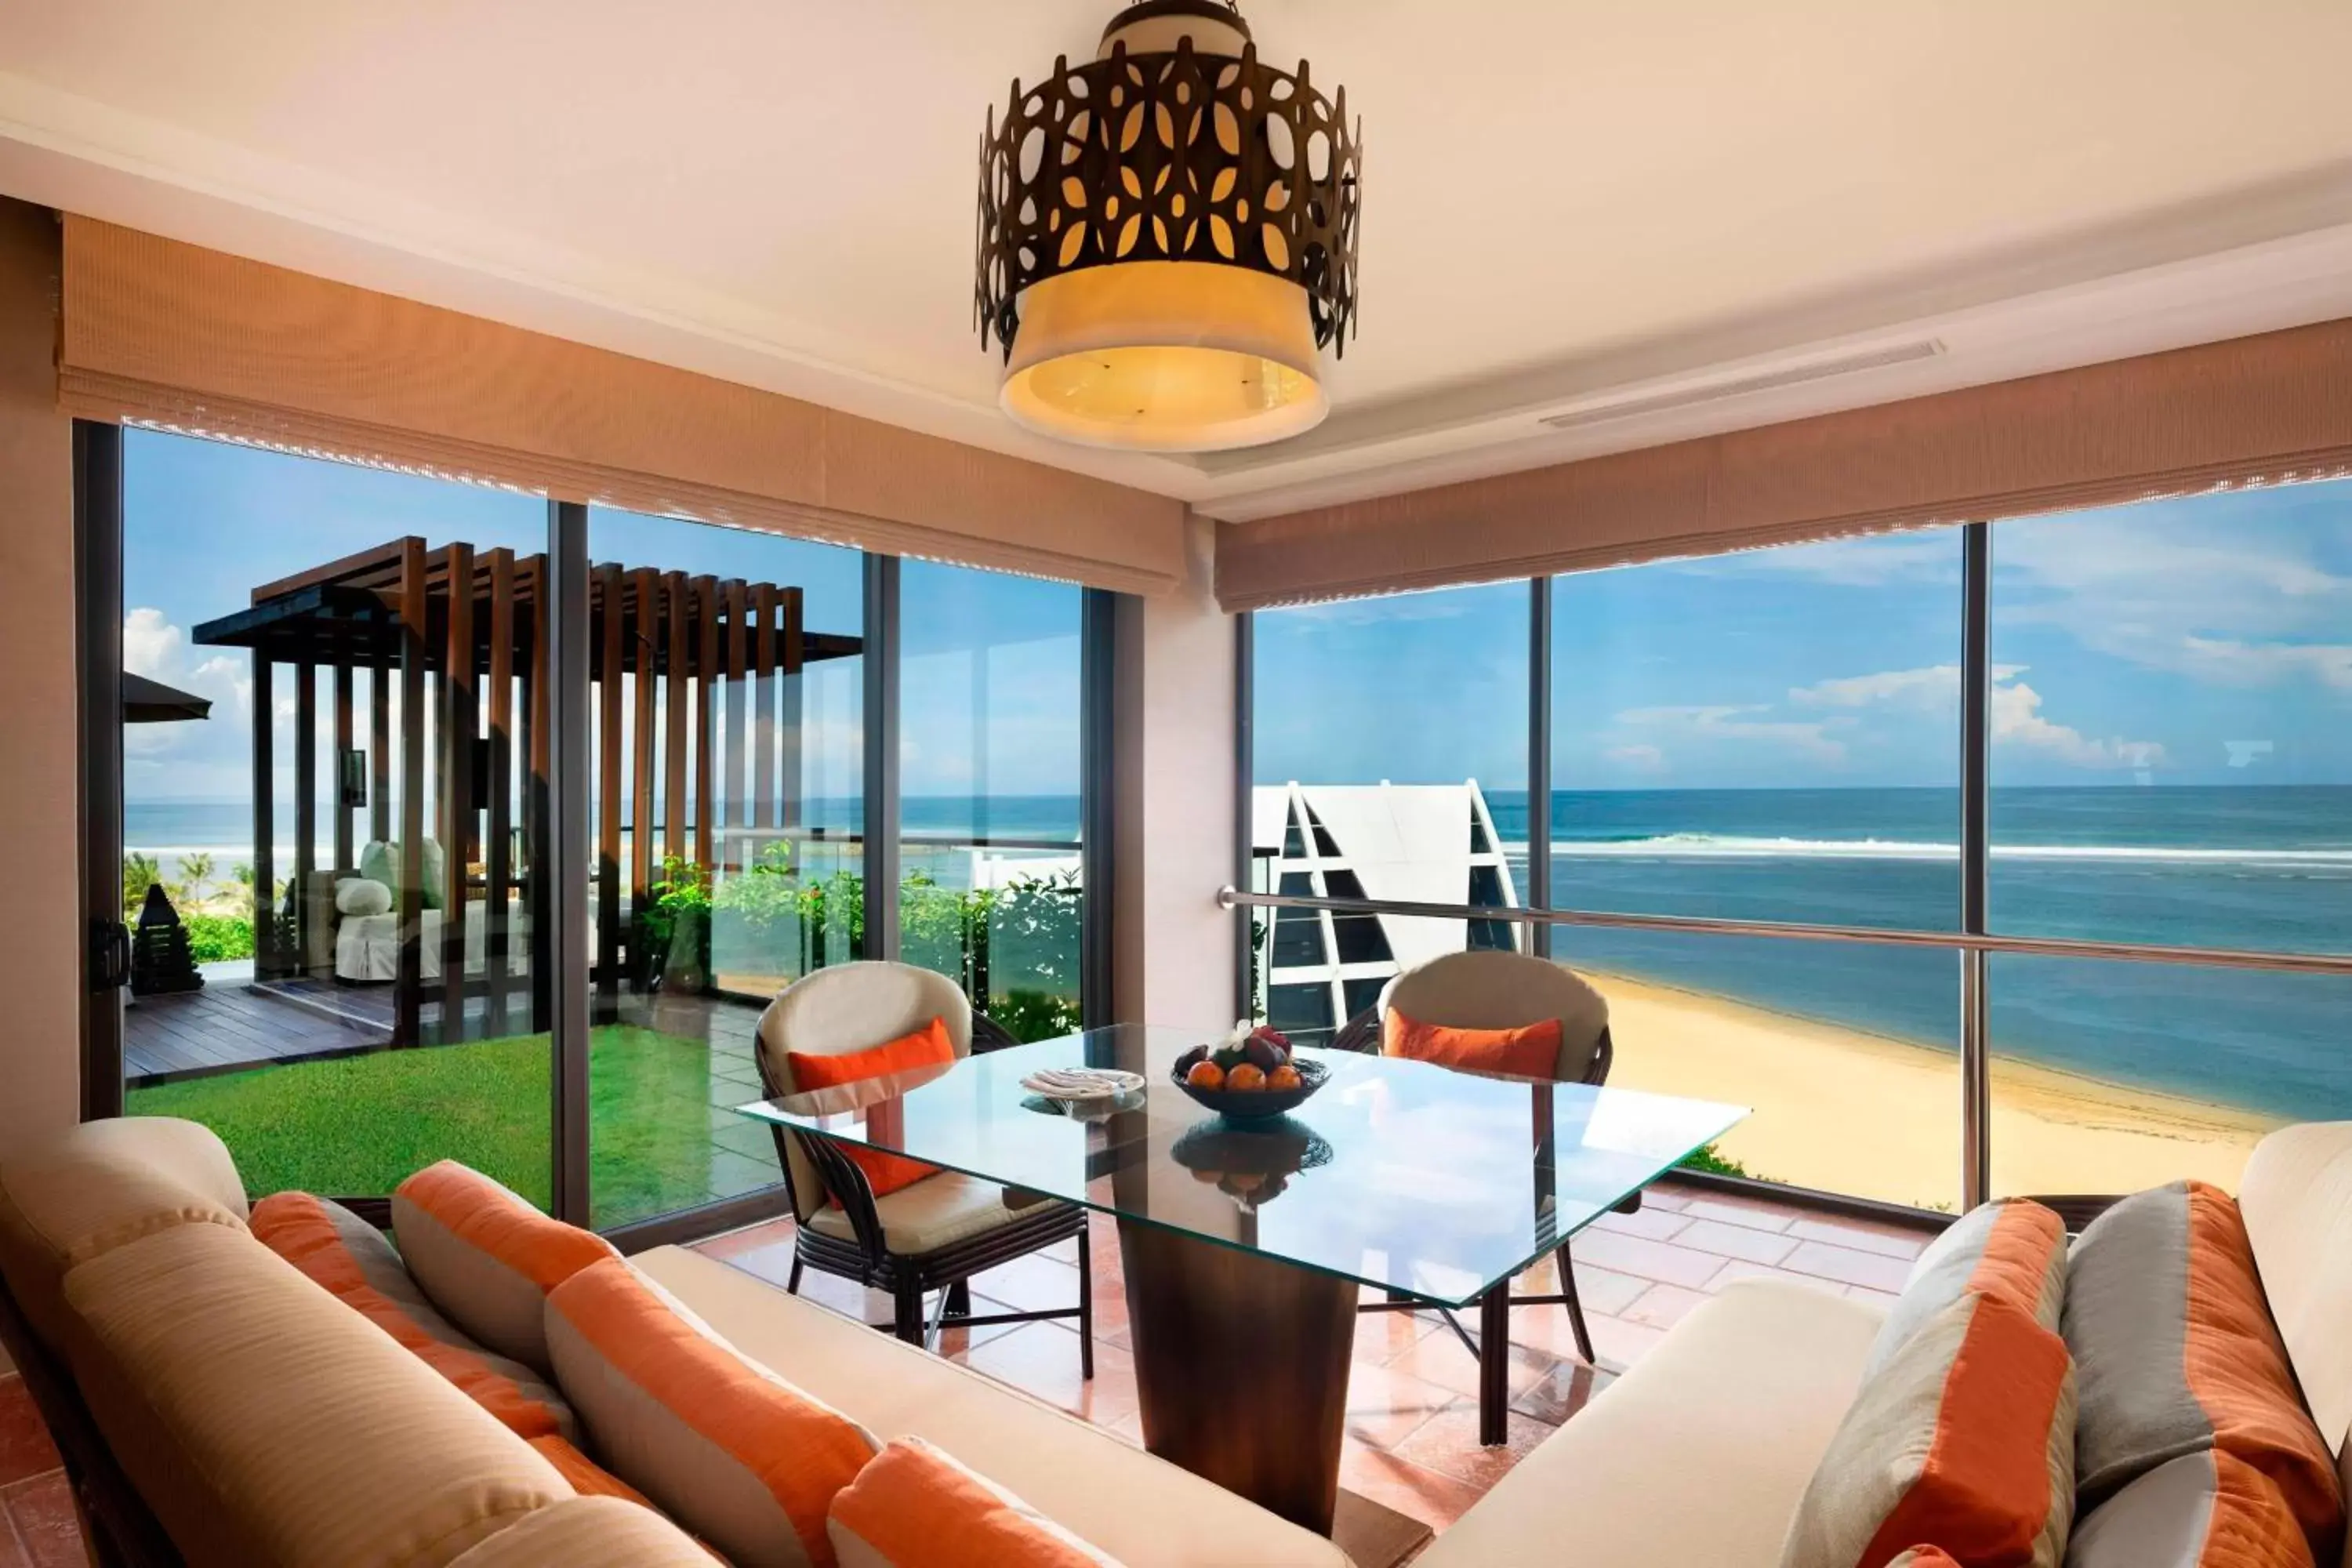 Bedroom in The Ritz-Carlton Bali